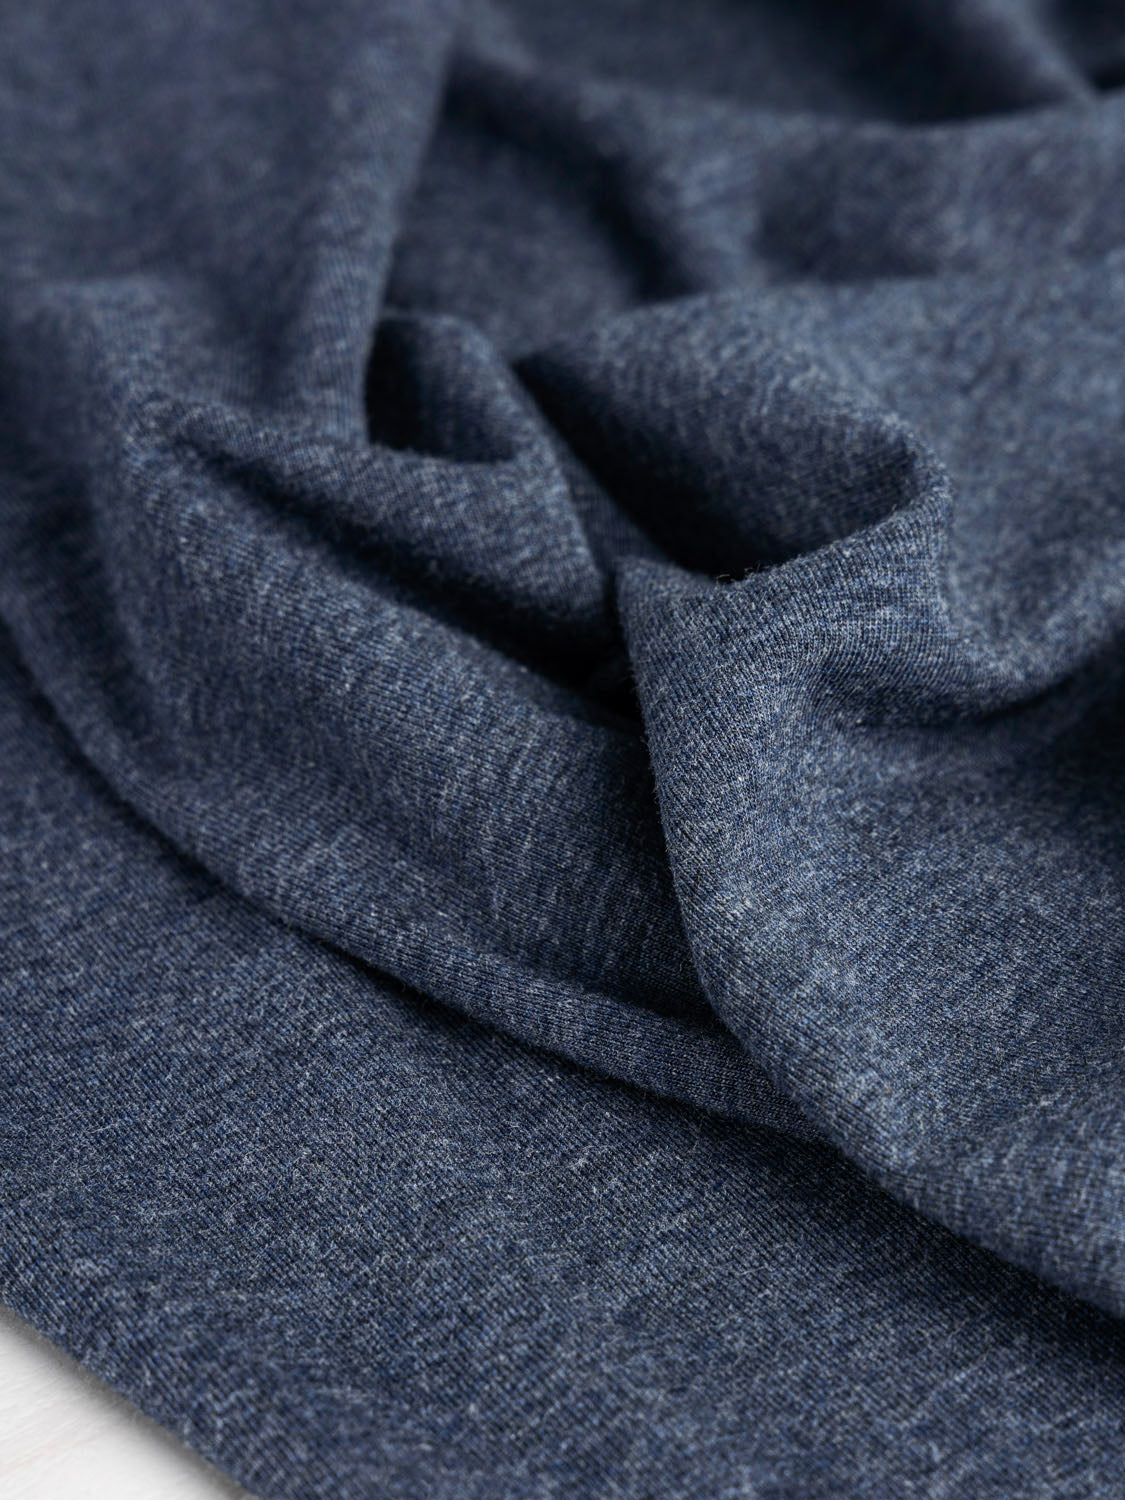 Organic Cotton Jersey Knit Fabric